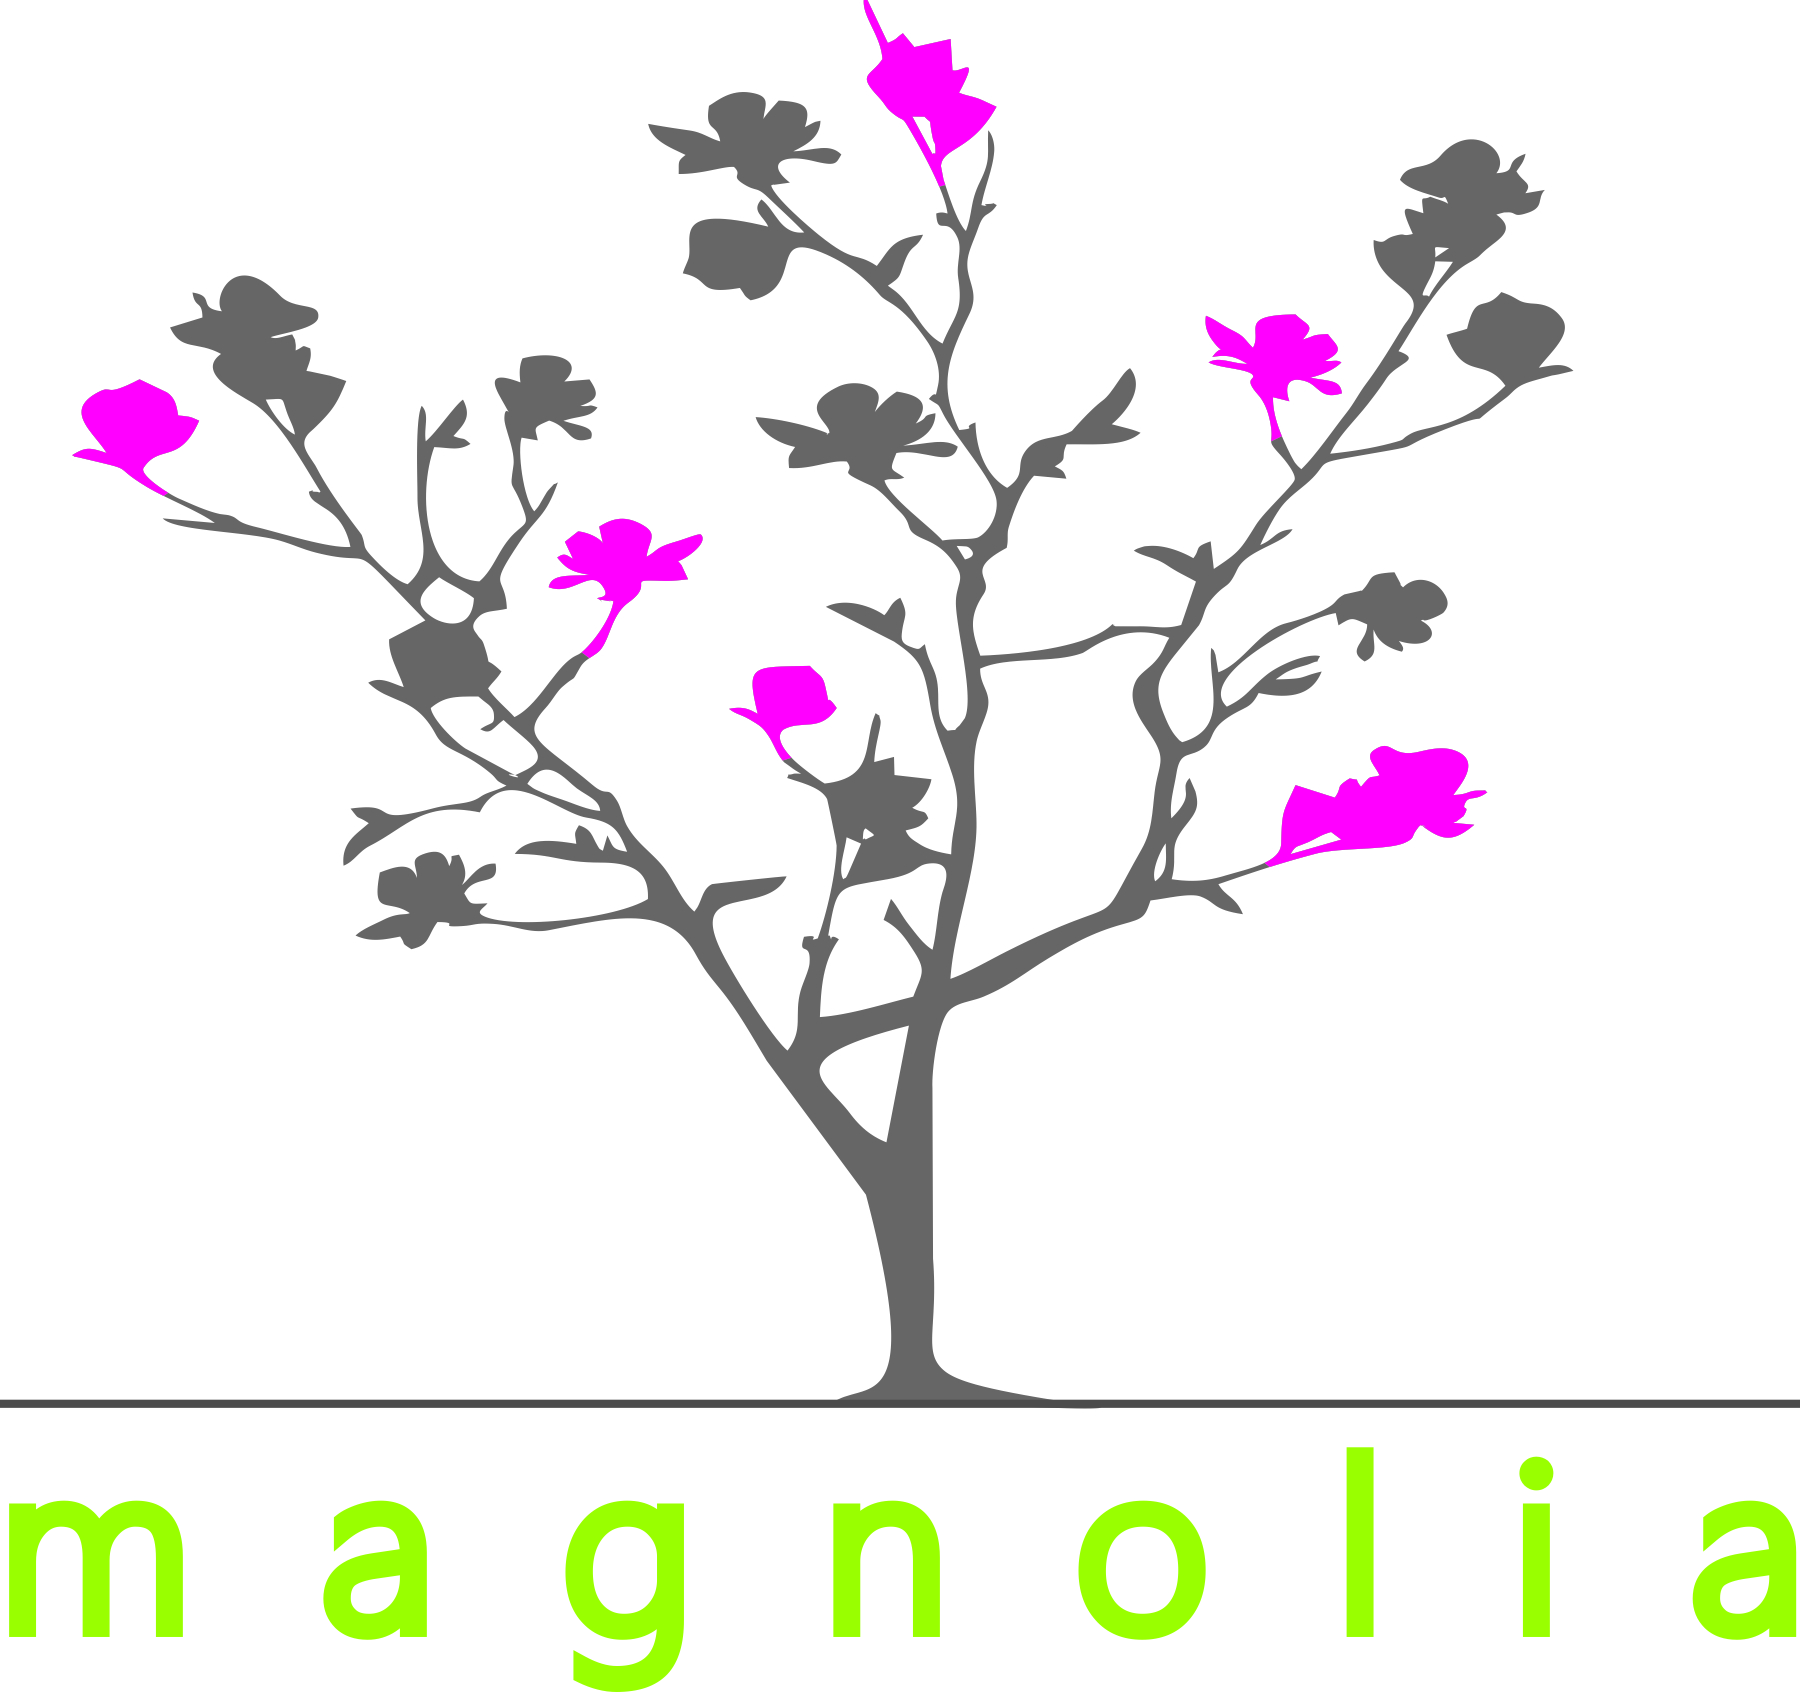 Sklep Ogrodniczy ,,Magnolia"